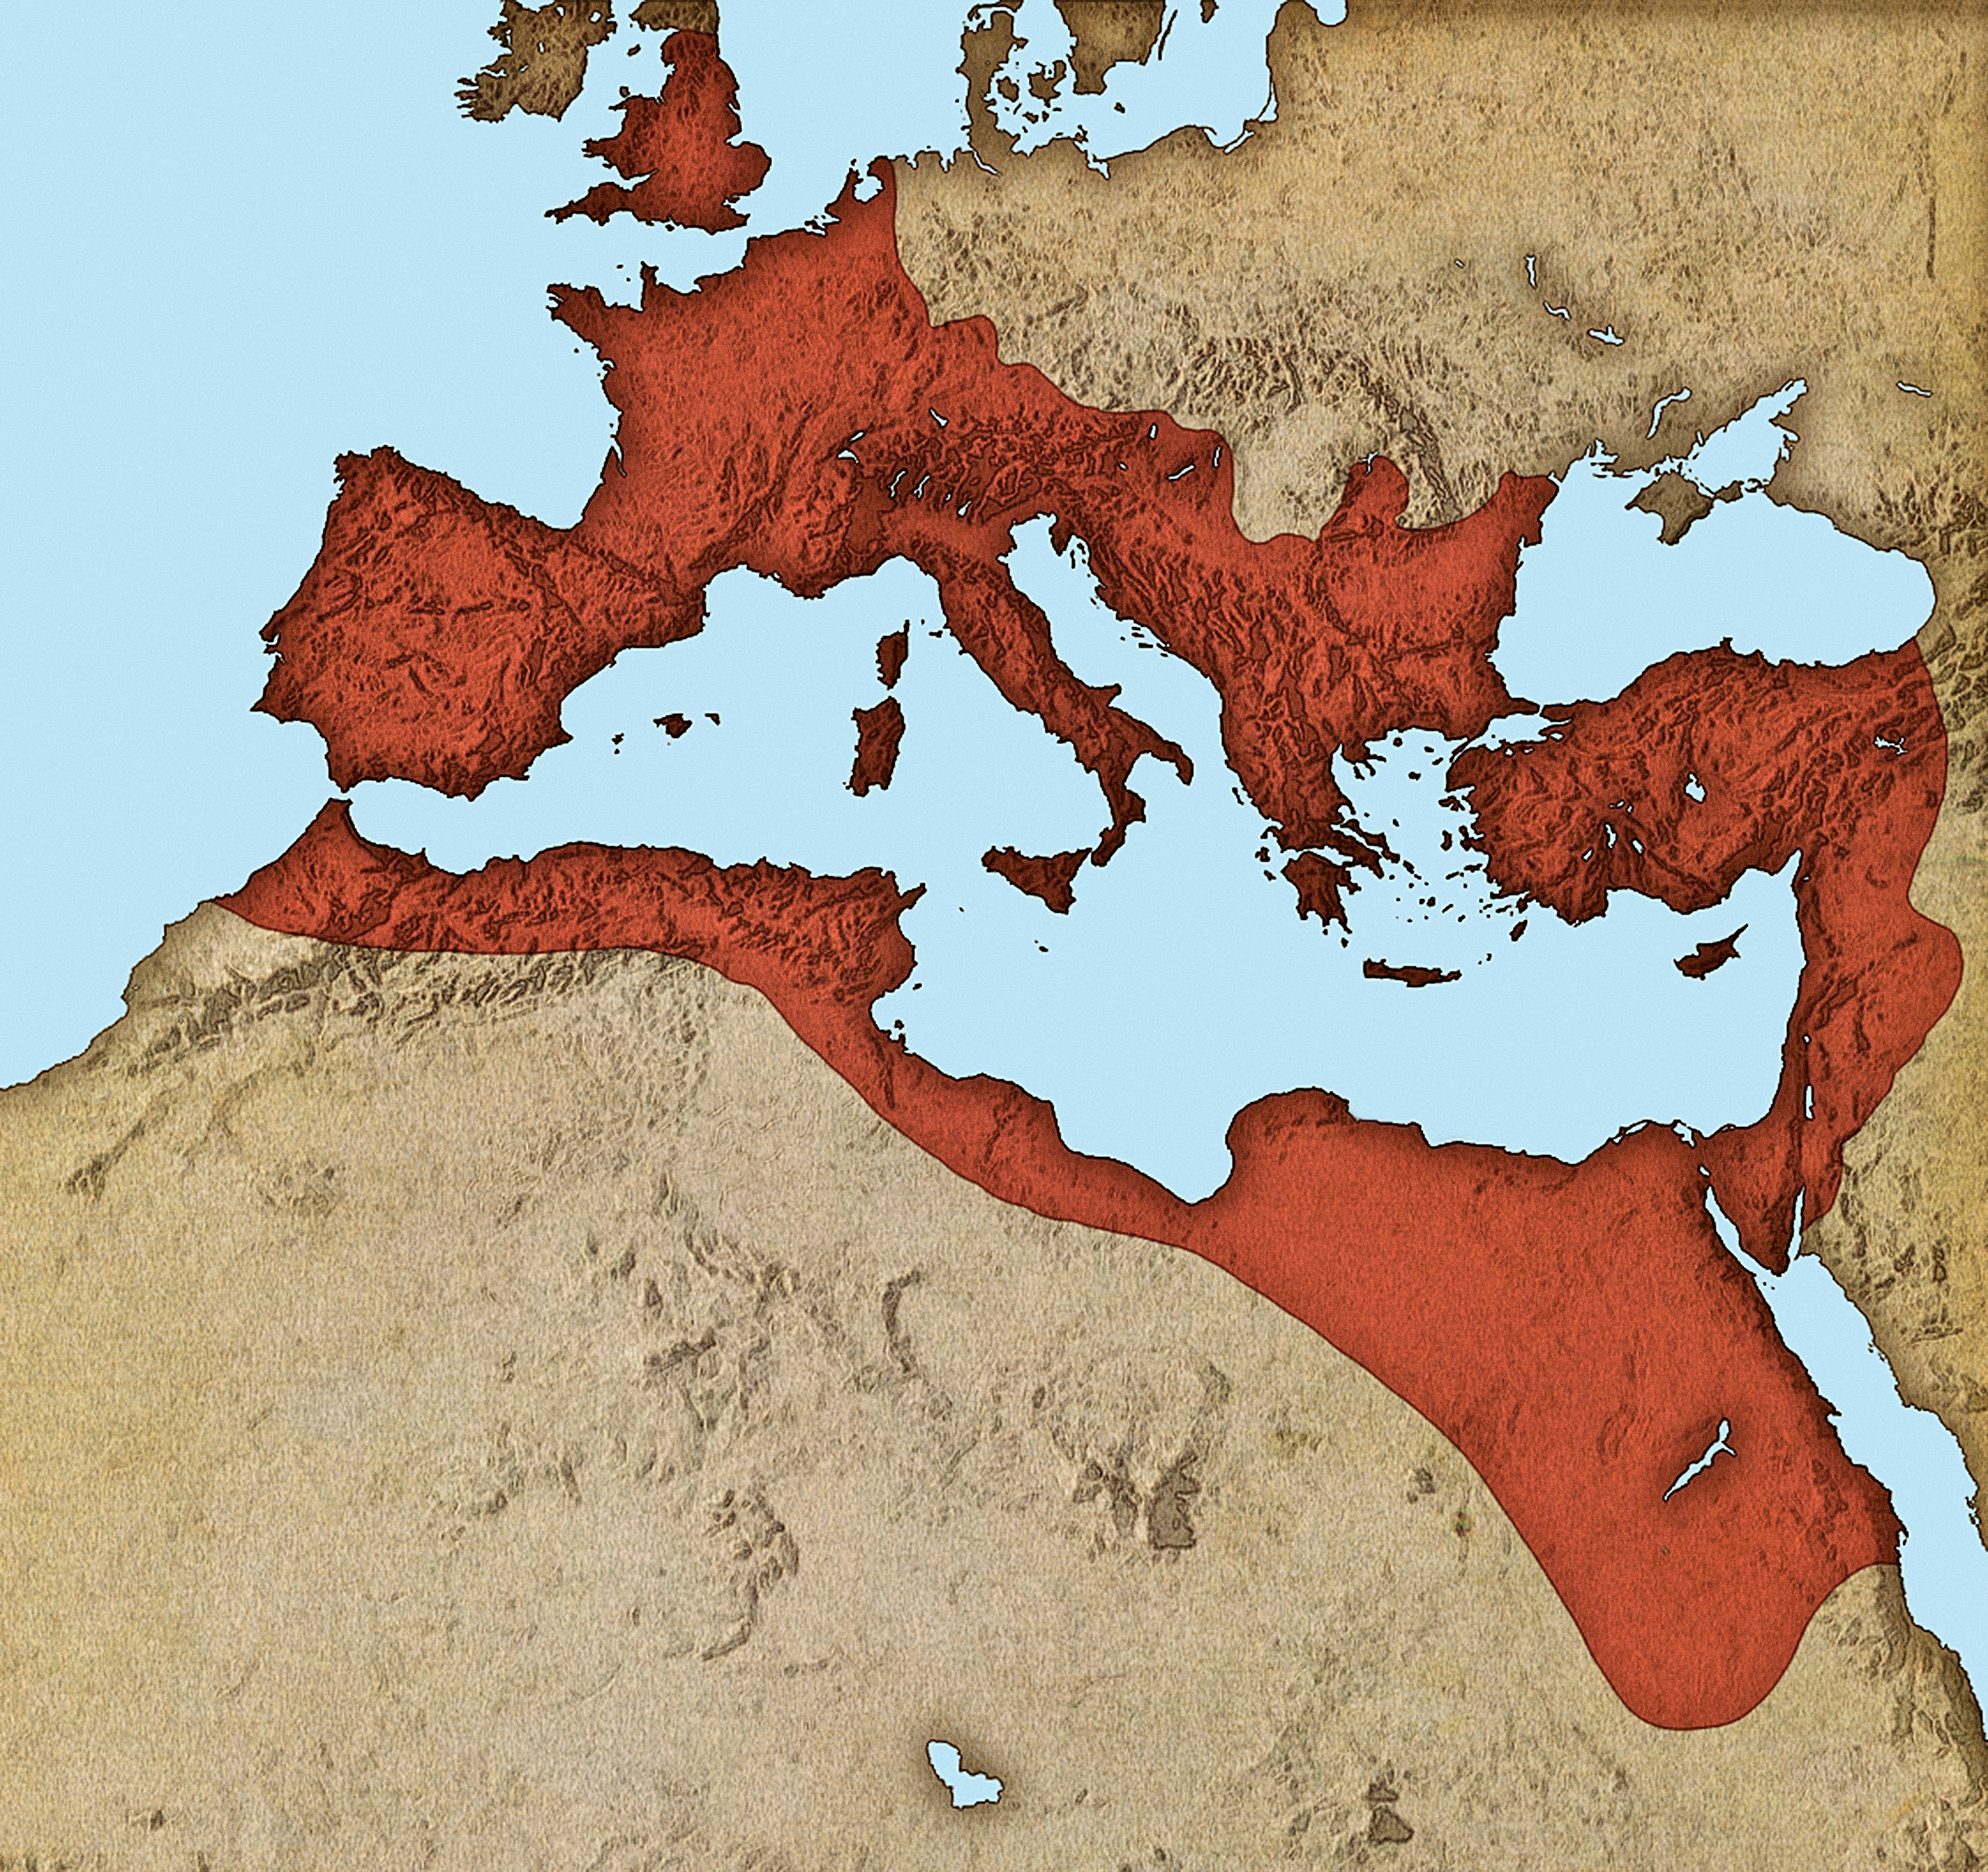 L'impero romano nel 117 d.C., quando Adriano succede a Traiano